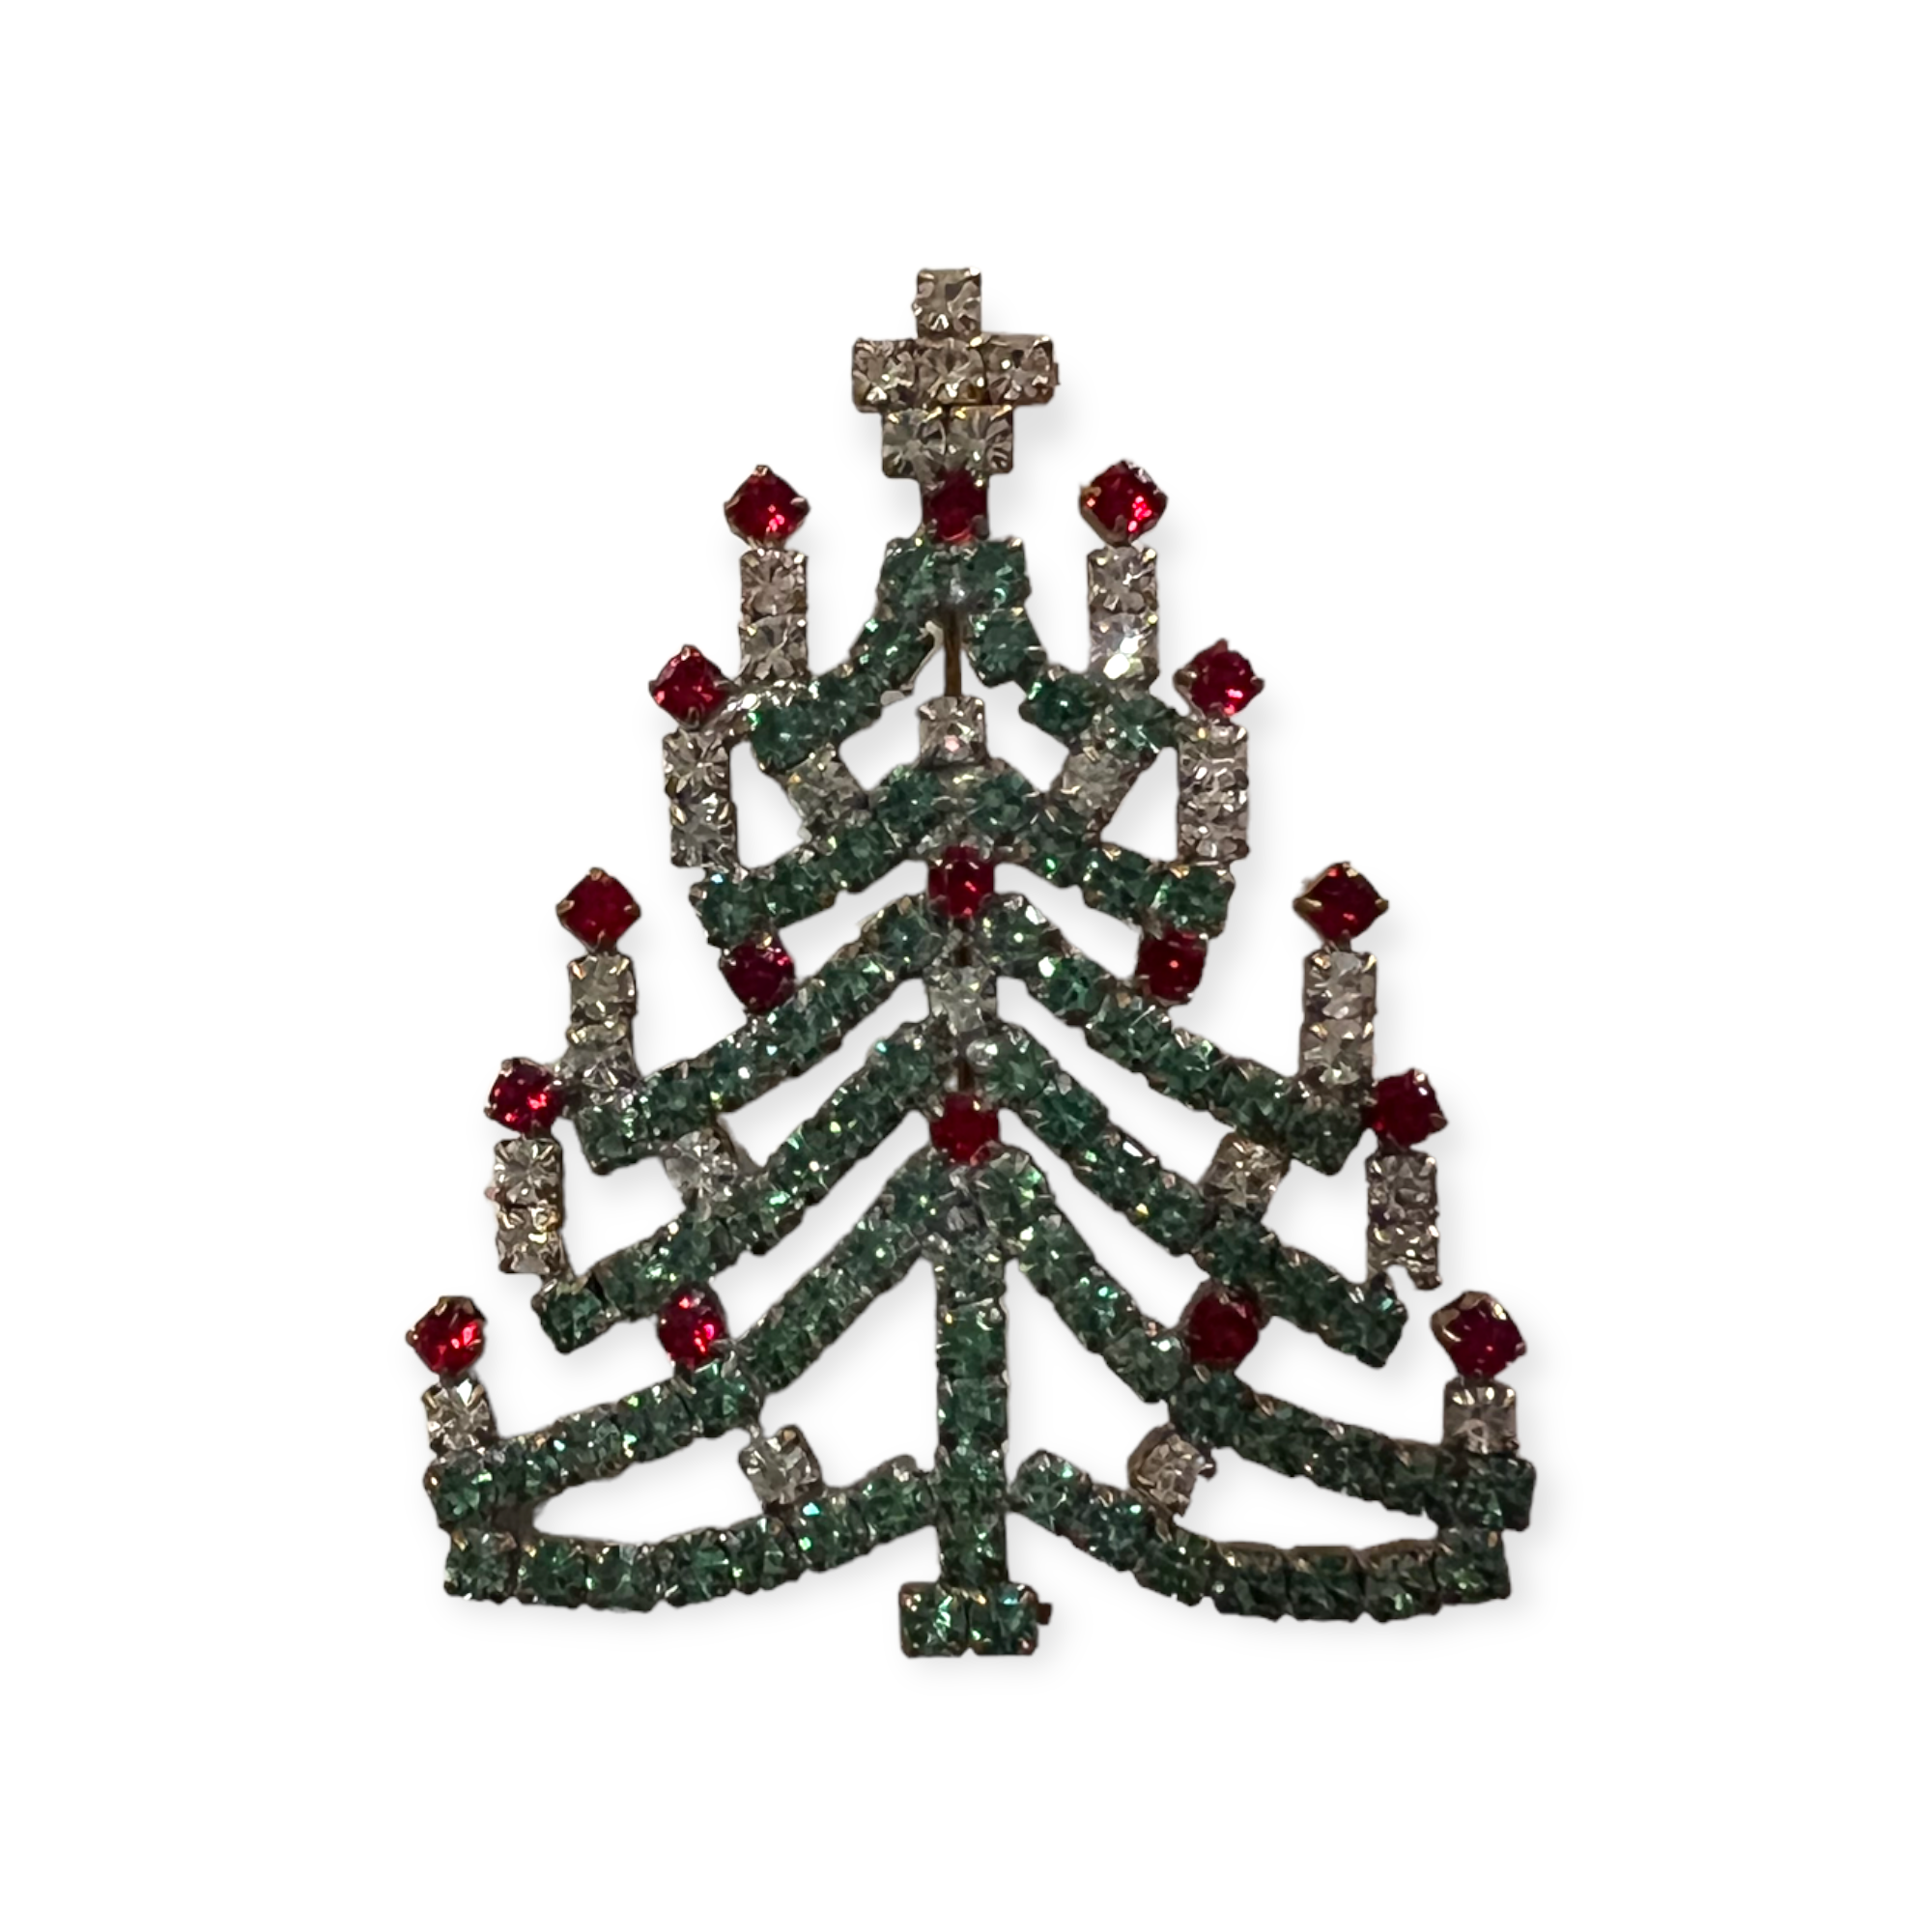 operatie Doordeweekse dagen essay Kerstbroche in de vorm van een Kerstboom - The Vintage Christmas Company